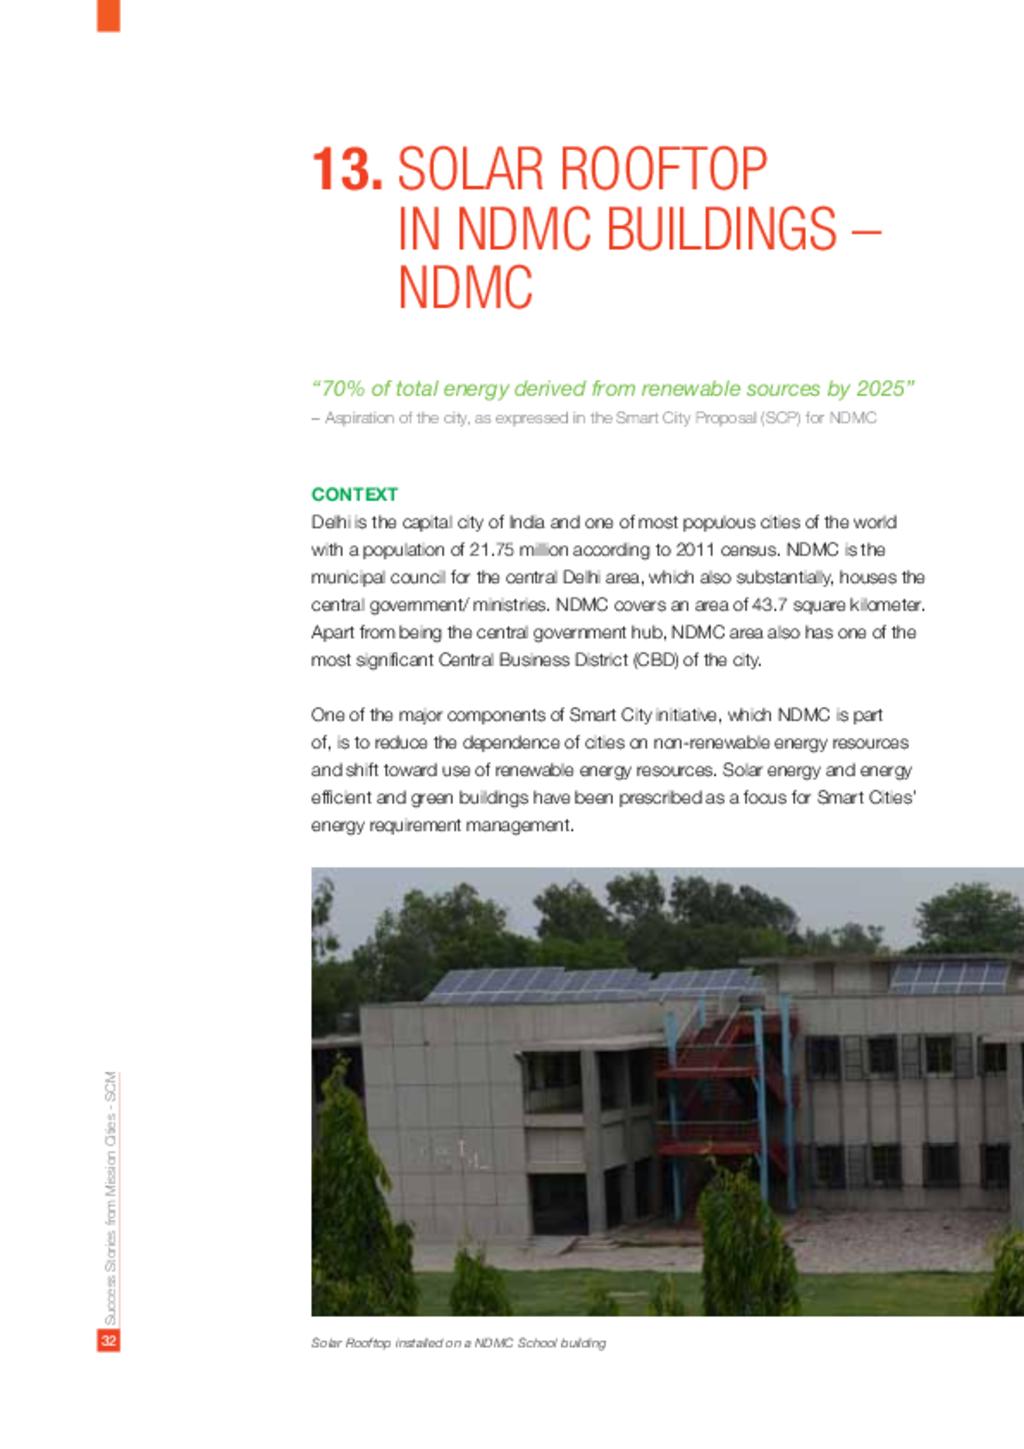 Solar Rooftop in NDMC Buildings